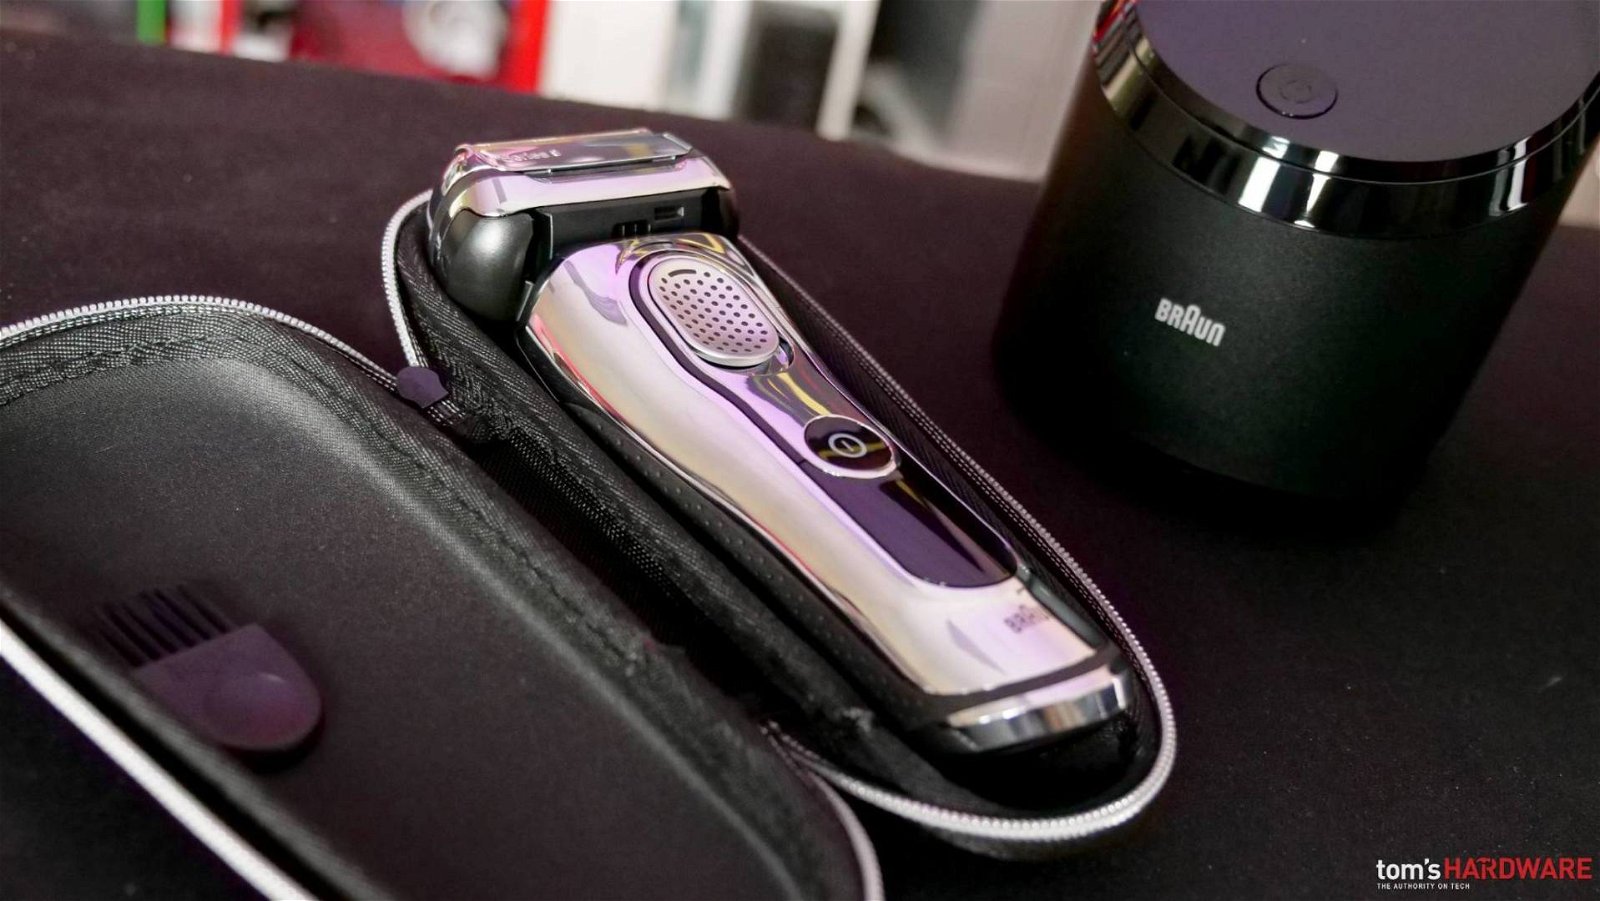 Immagine di Braun Series 9, tecnologia e innovazione al servizio della rasatura, ora in offerta Prime